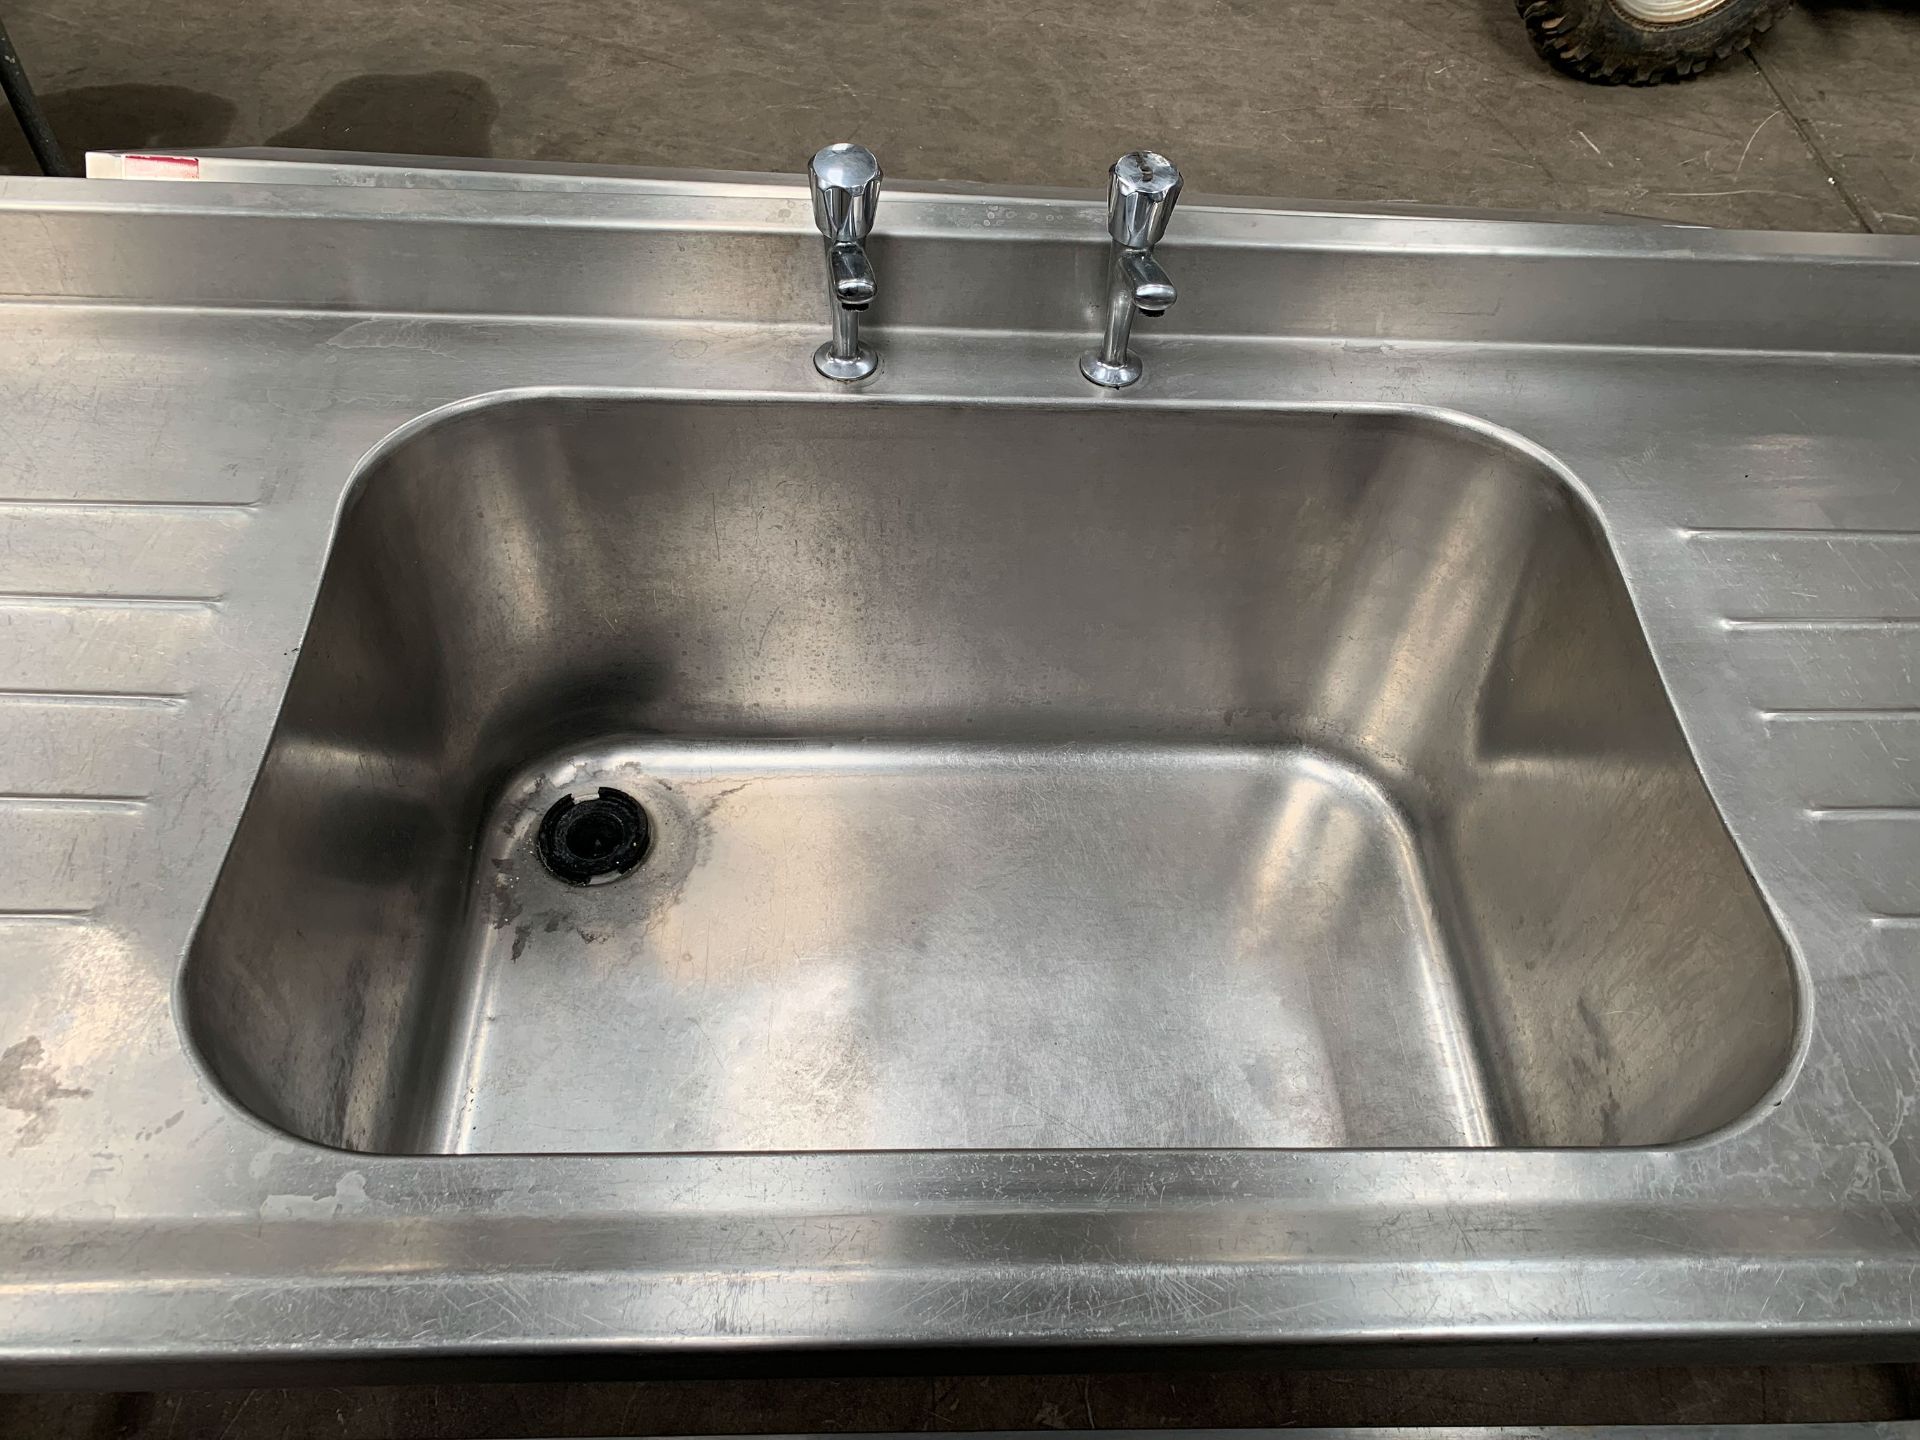 Large Stainless Steel Single Basin Sink Unit with Splashback - Image 2 of 2